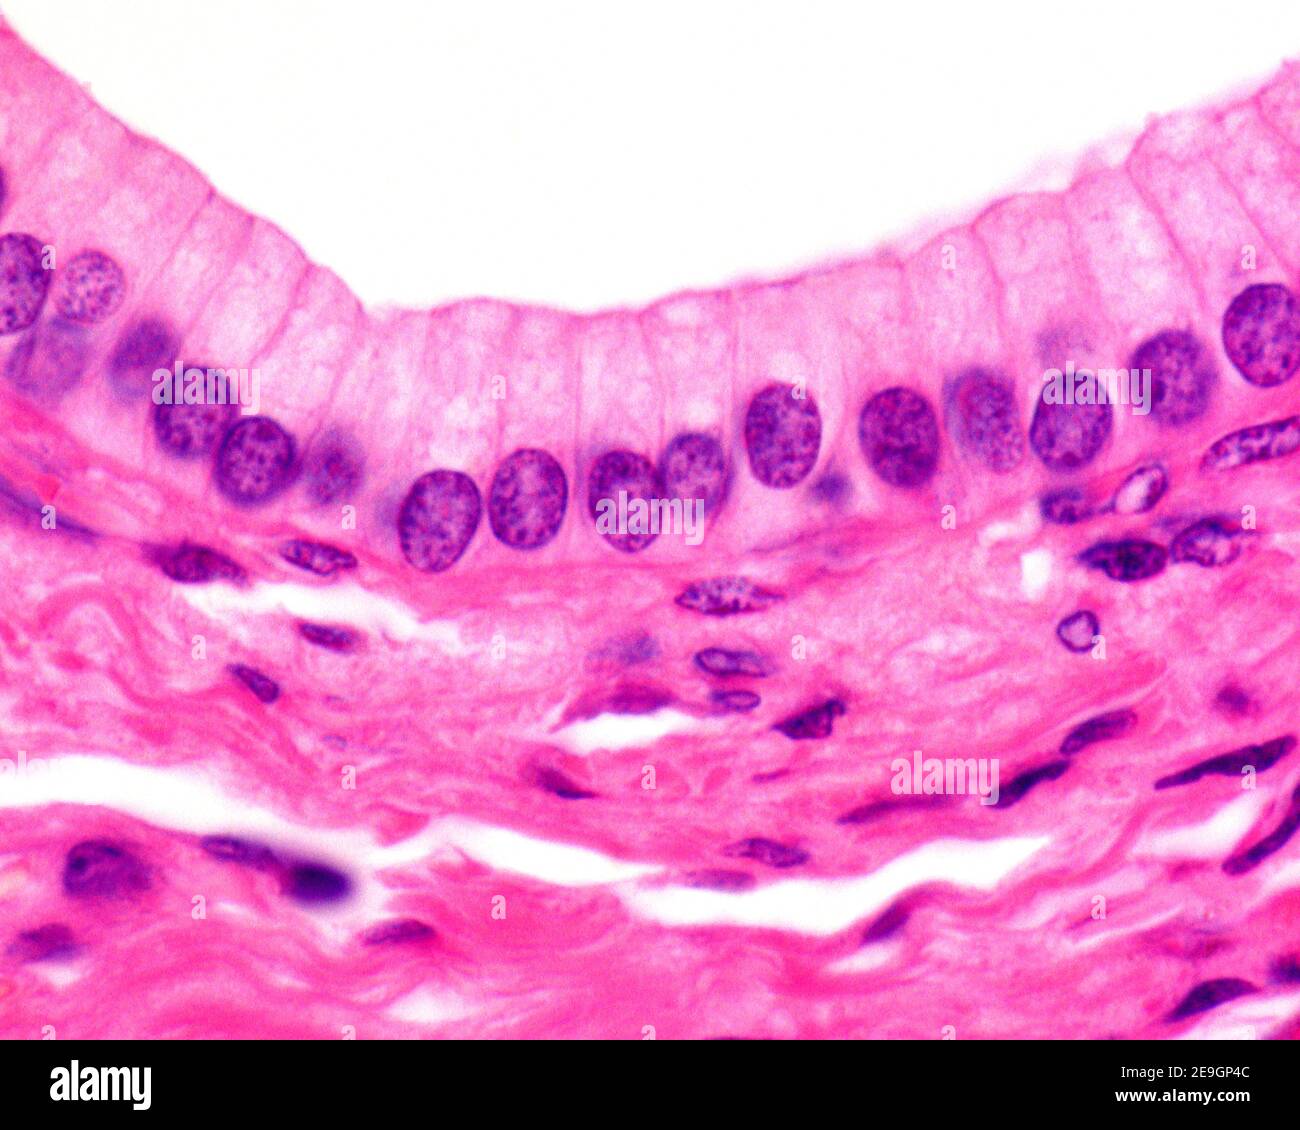 Épithélium columnaire simple d'un canal excrétoire du pancréas. Image de microscope léger. Banque D'Images